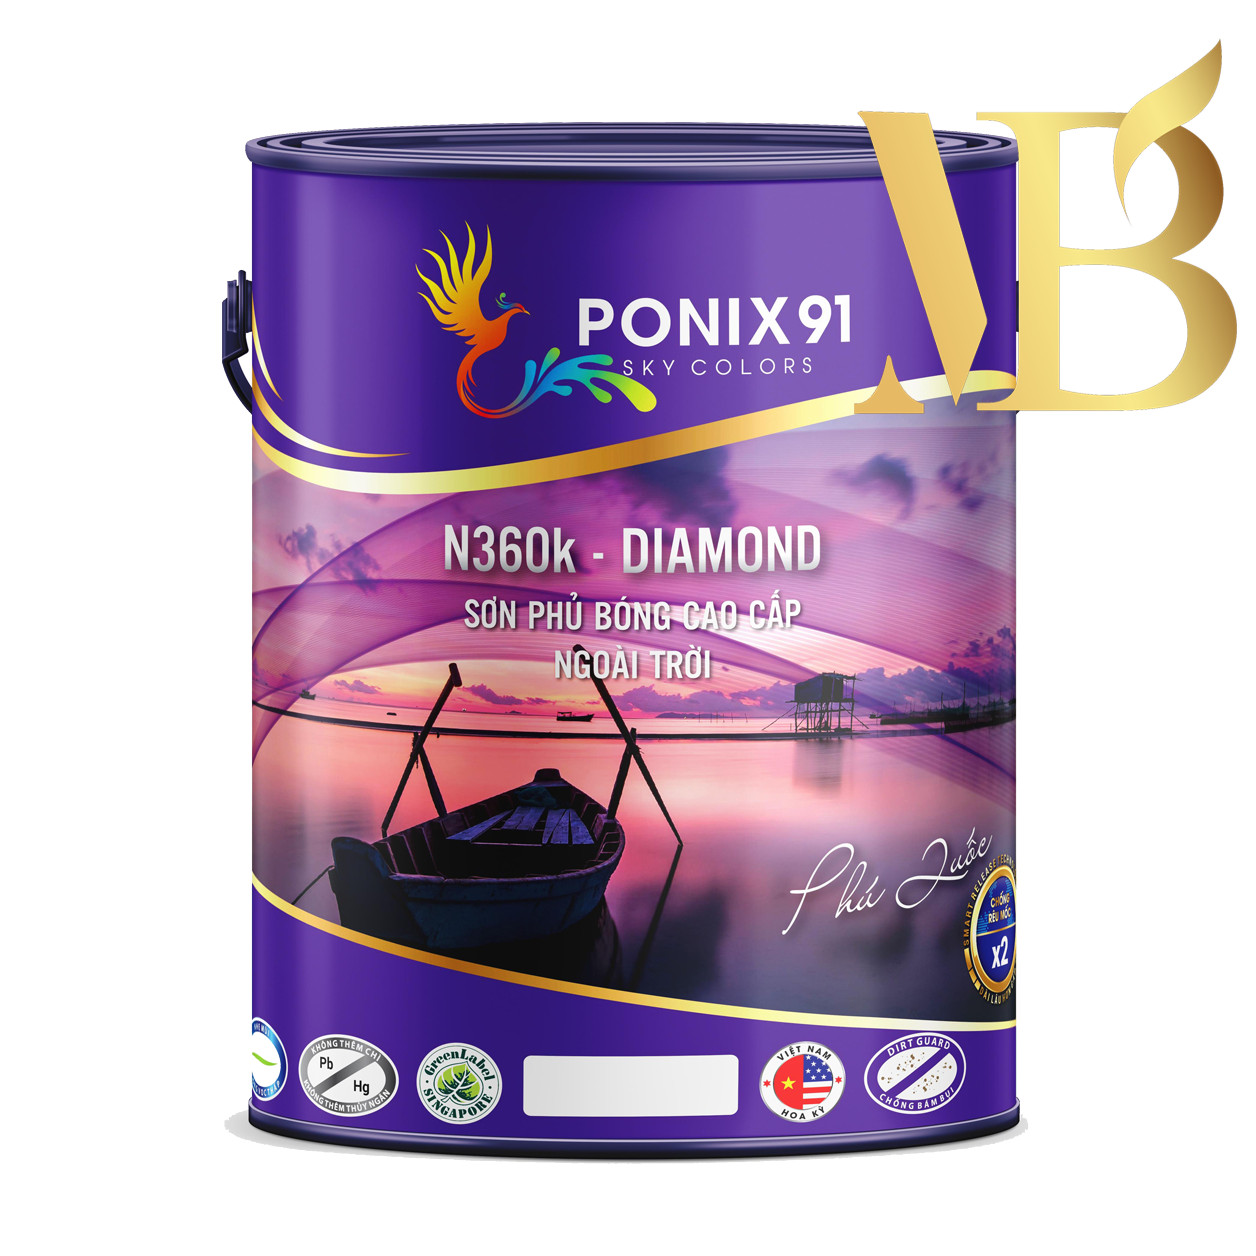 SƠN PHỦ BÓNG CAO CẤP NGOÀI TRỜI PONIX91 - N360K